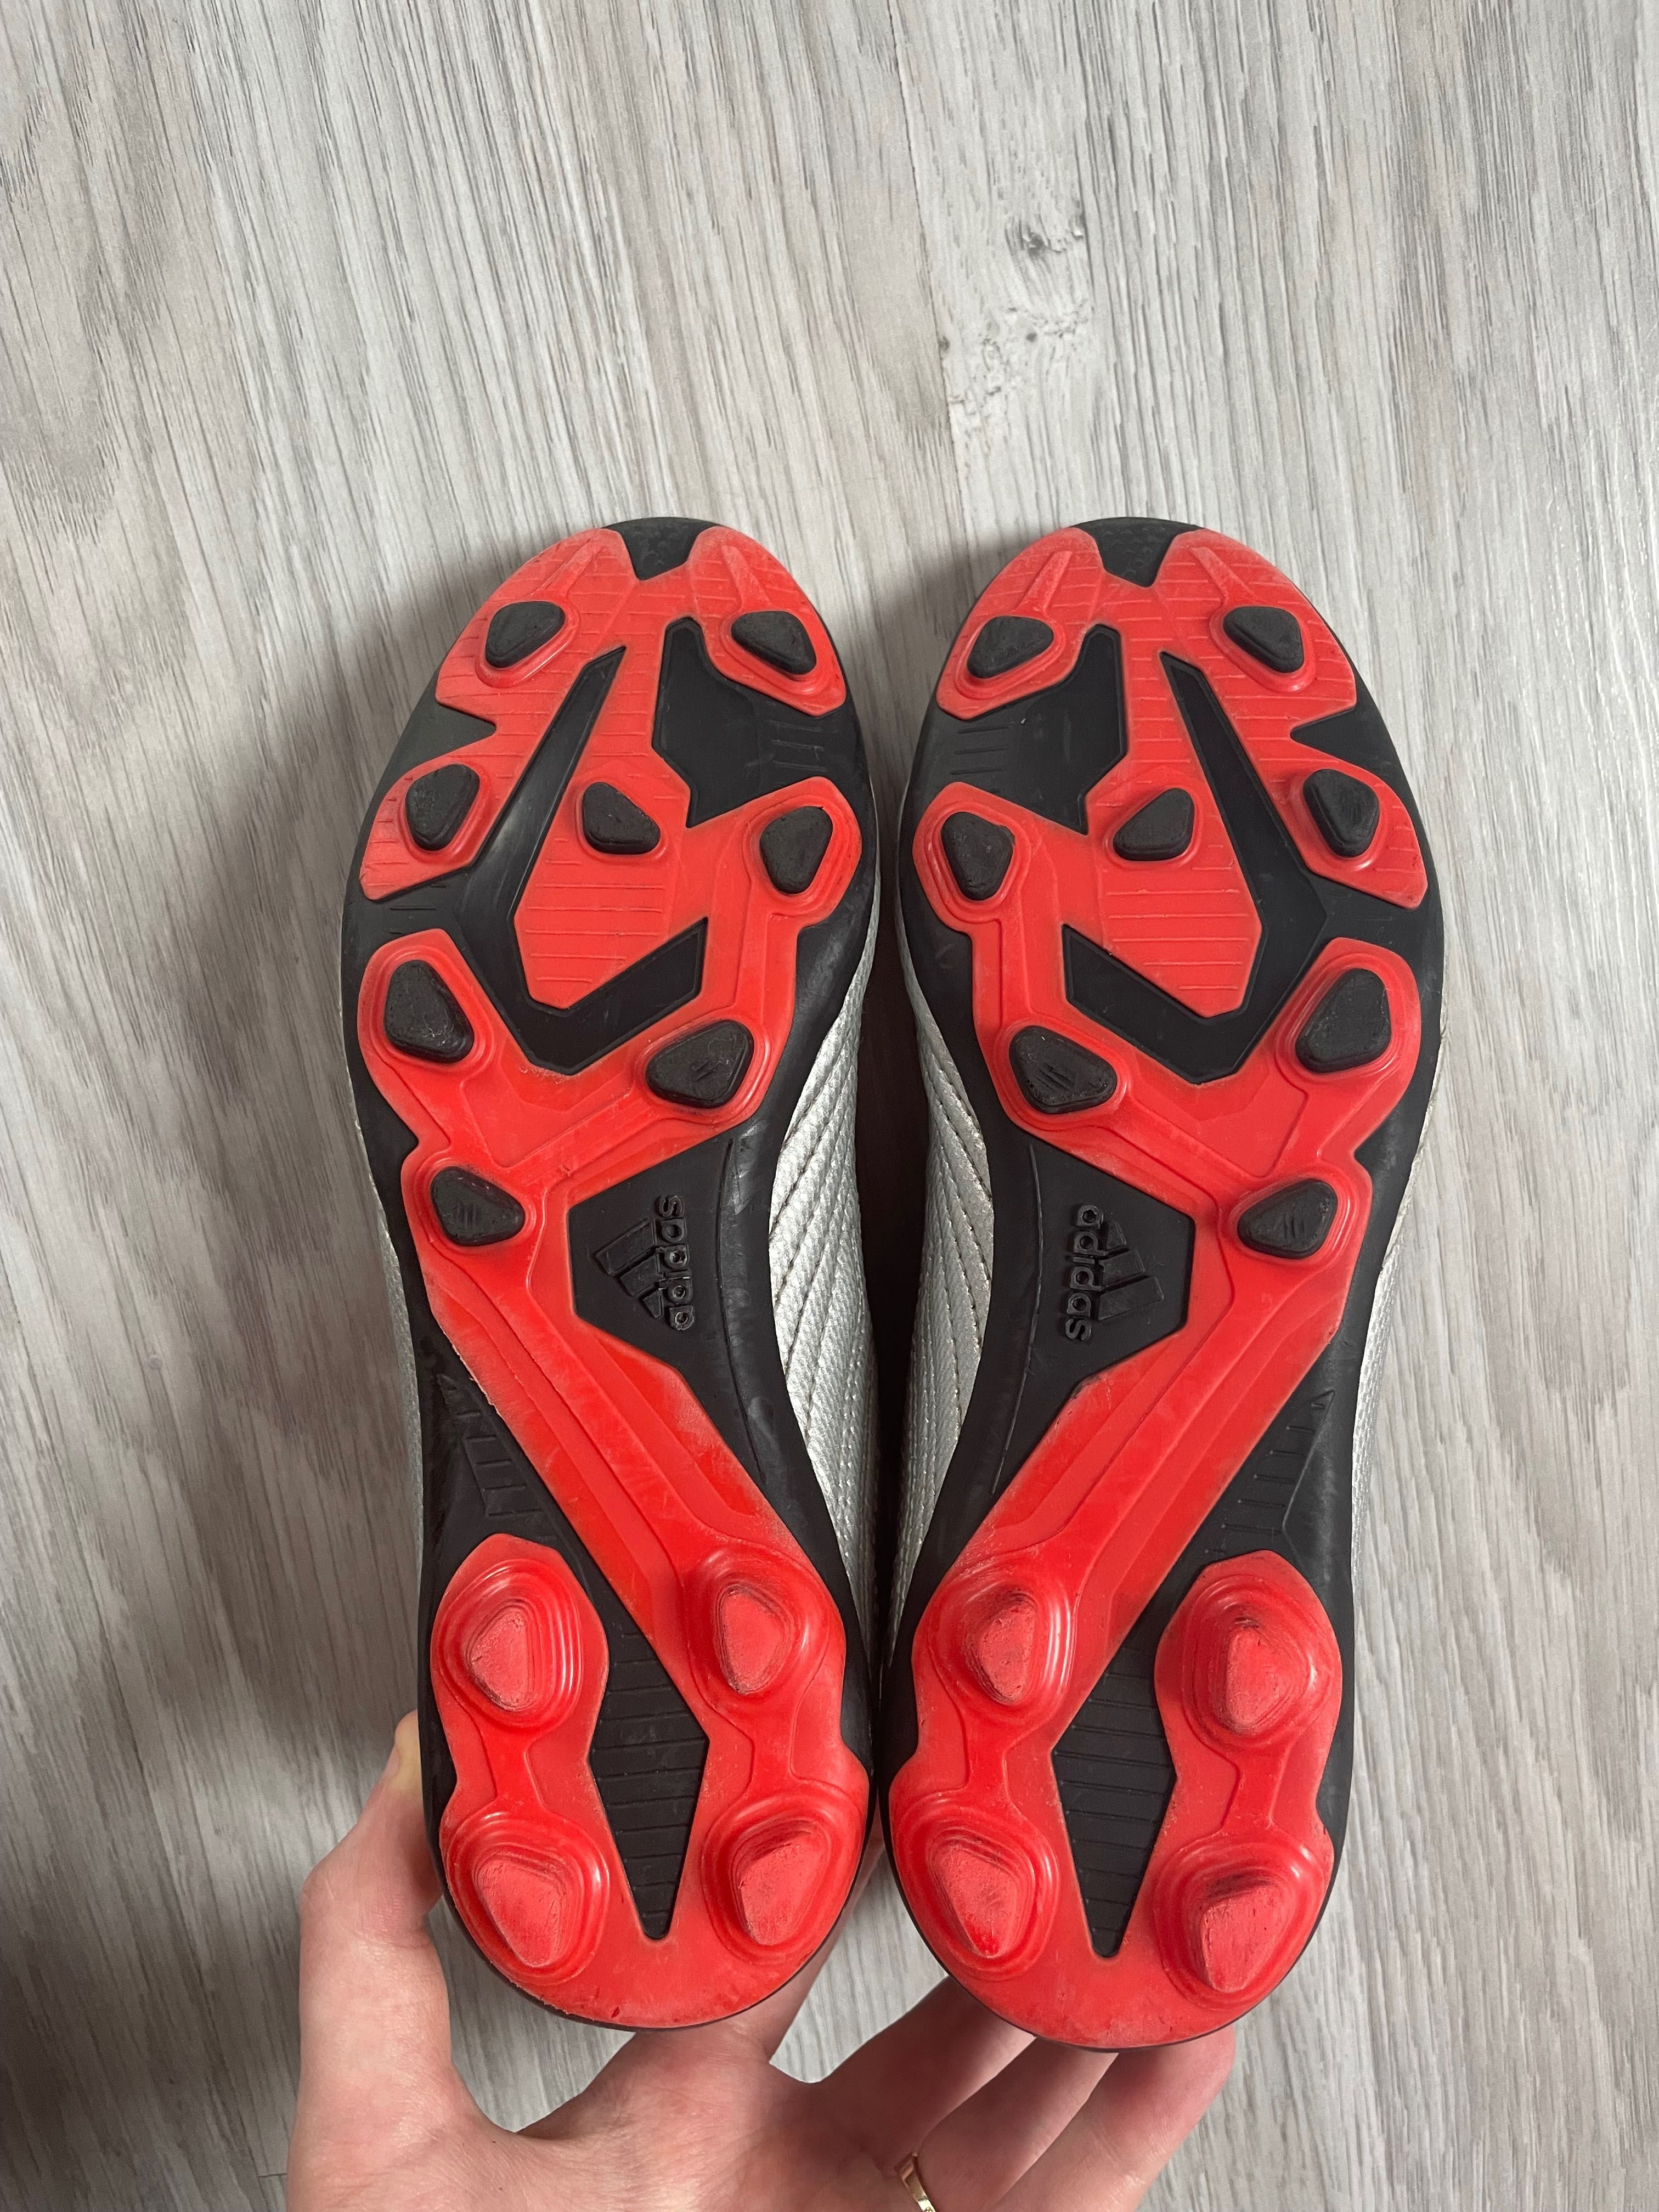 Korki buty piłkarskie Adidas Predator 19.4 rozmiar 35